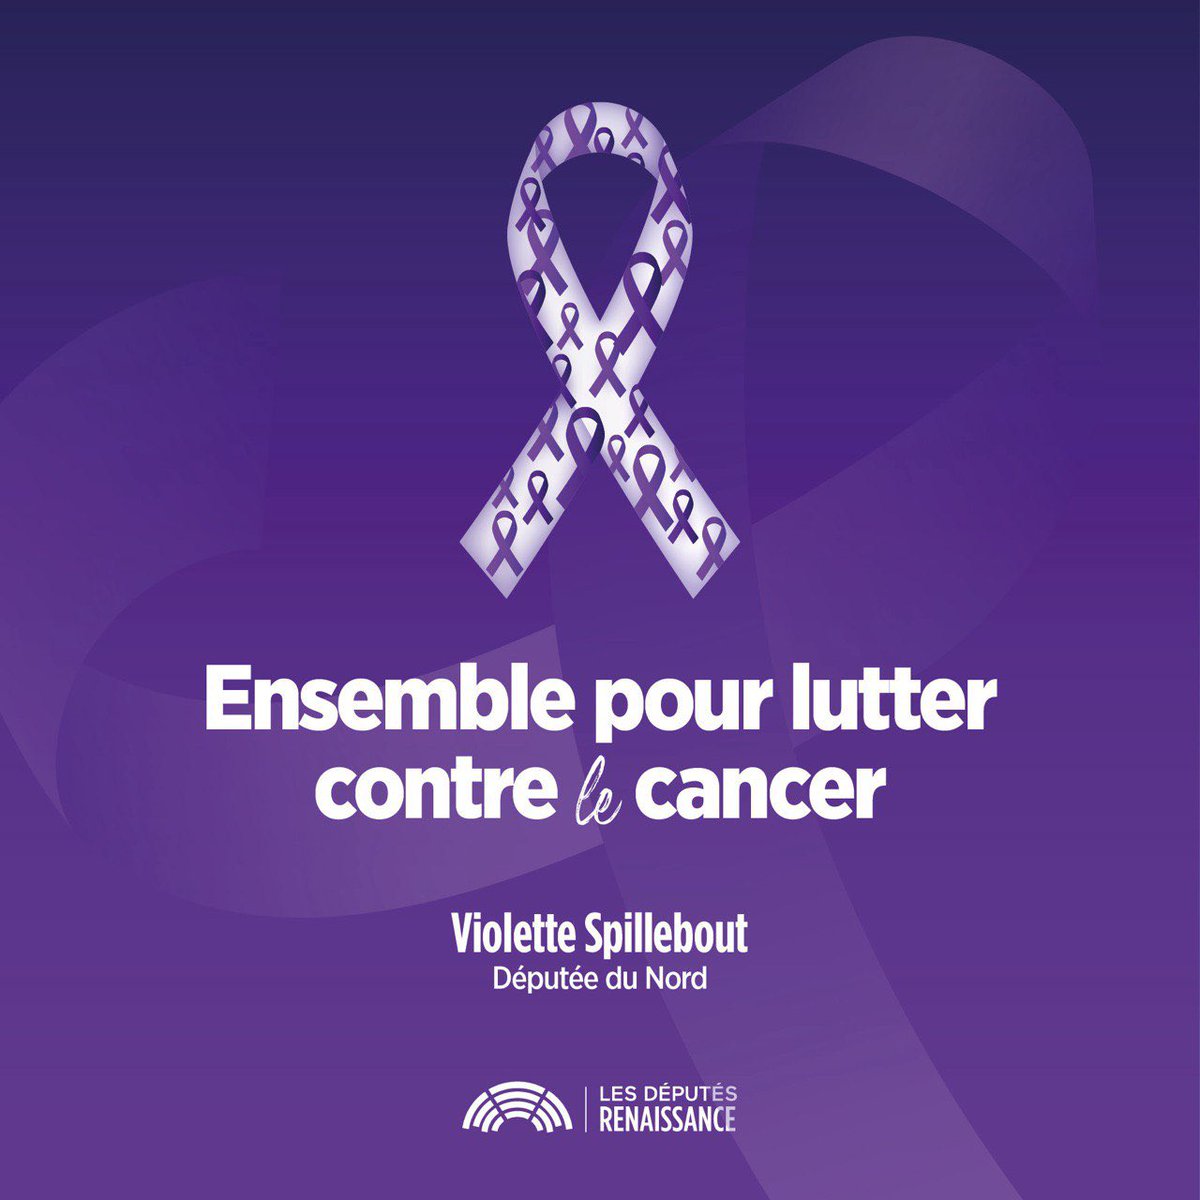 ❤️‍🩹En cette #JournéeMondialeContreLeCancer, il est important de rappeler que la recherche et l'innovation permettent de mieux soigner les cancers. Continuons d’unir nos forces pour les combattre.